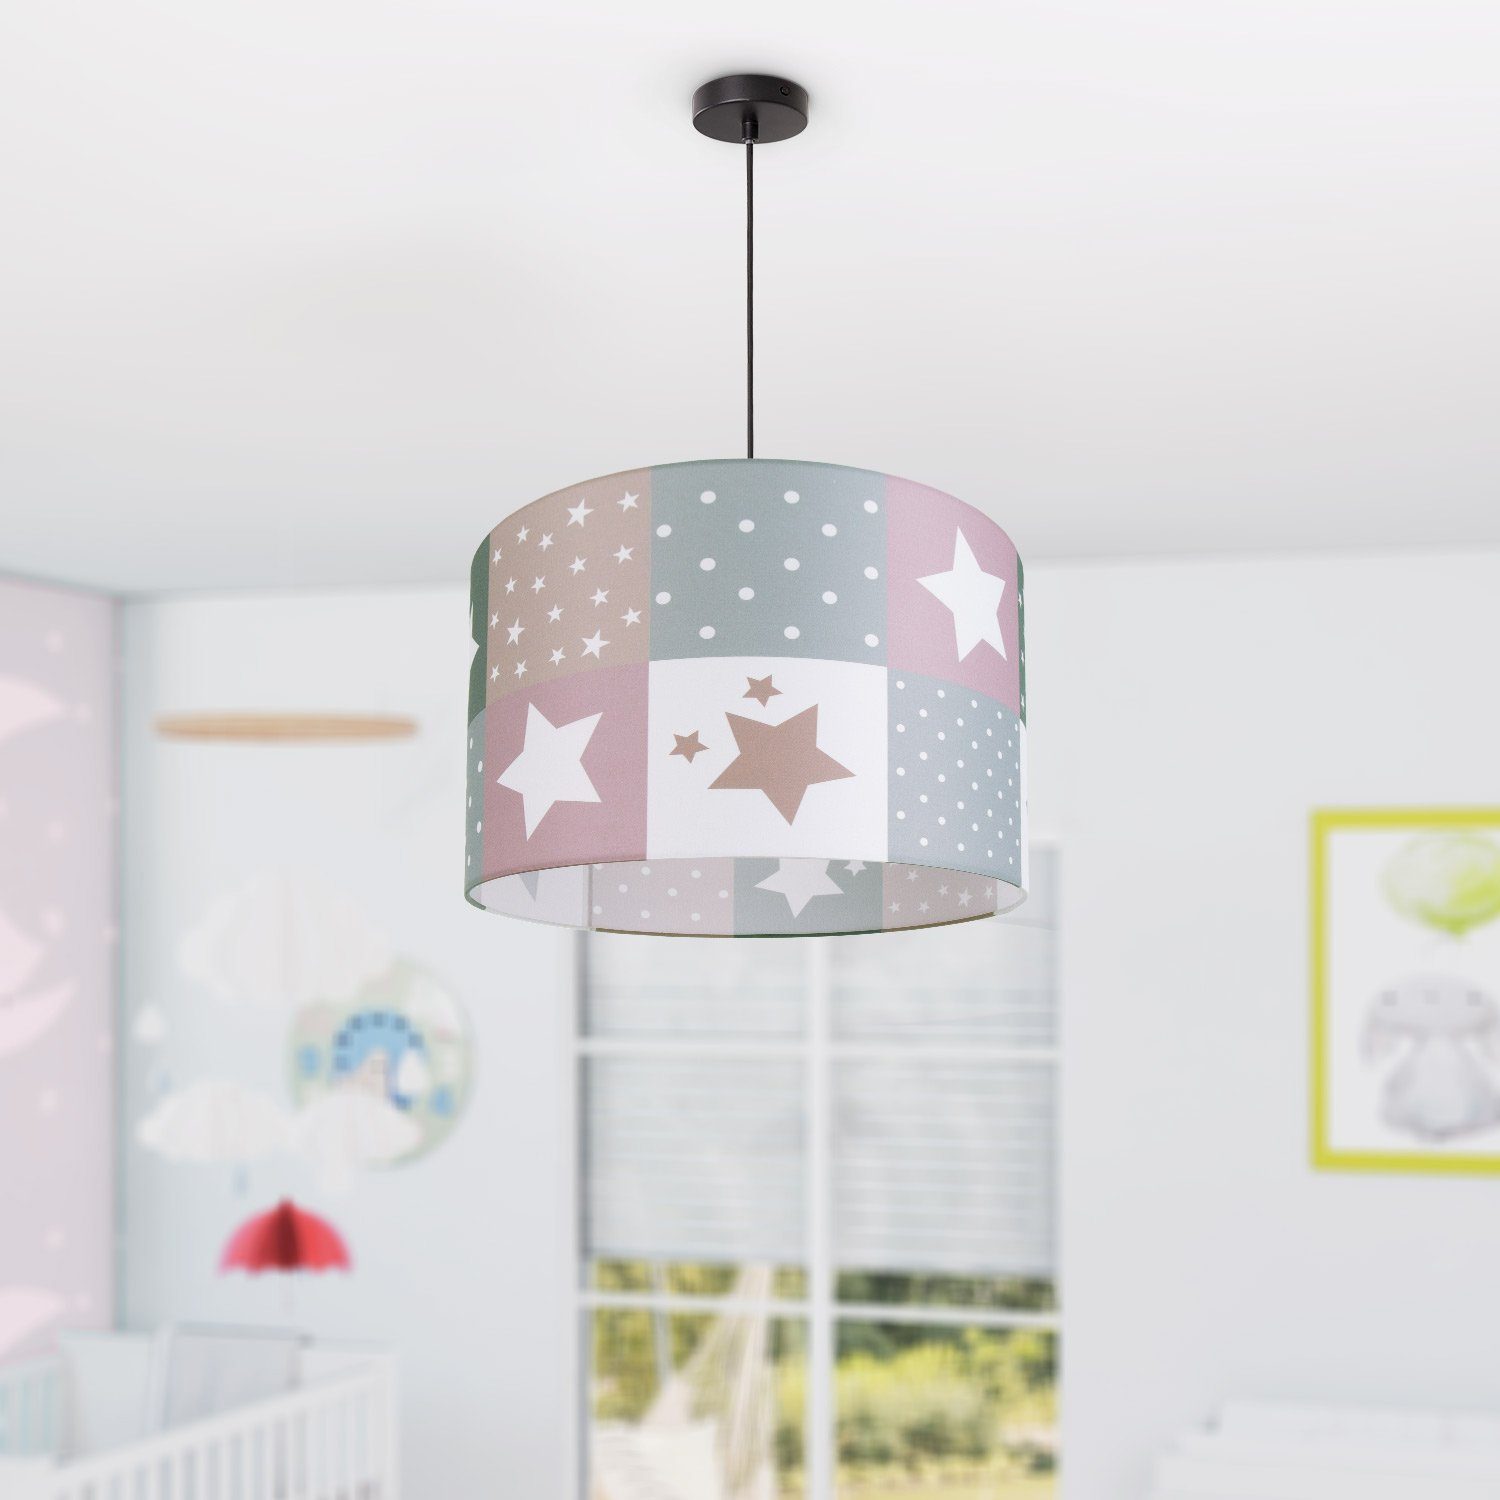 Paco Home Pendelleuchte Cosmo 345, Kinderzimmer Motiv Sternen Lampe Deckenlampe Leuchtmittel, E27 Kinderlampe LED ohne